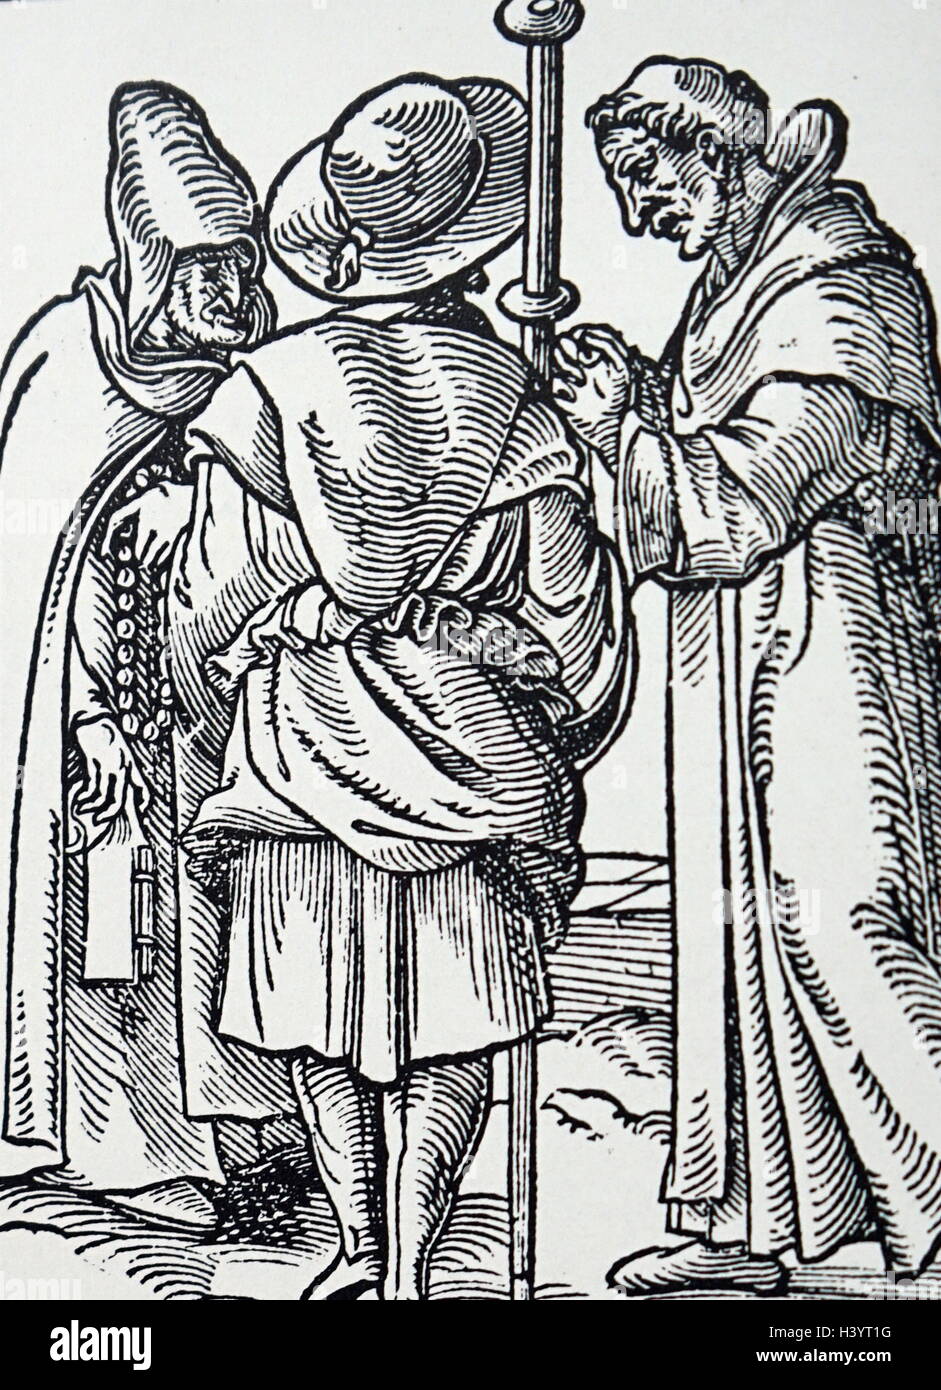 Holzschnitt Darstellung mittelalterlicher Mönch. Datiert aus dem 16. Jahrhundert Stockfoto